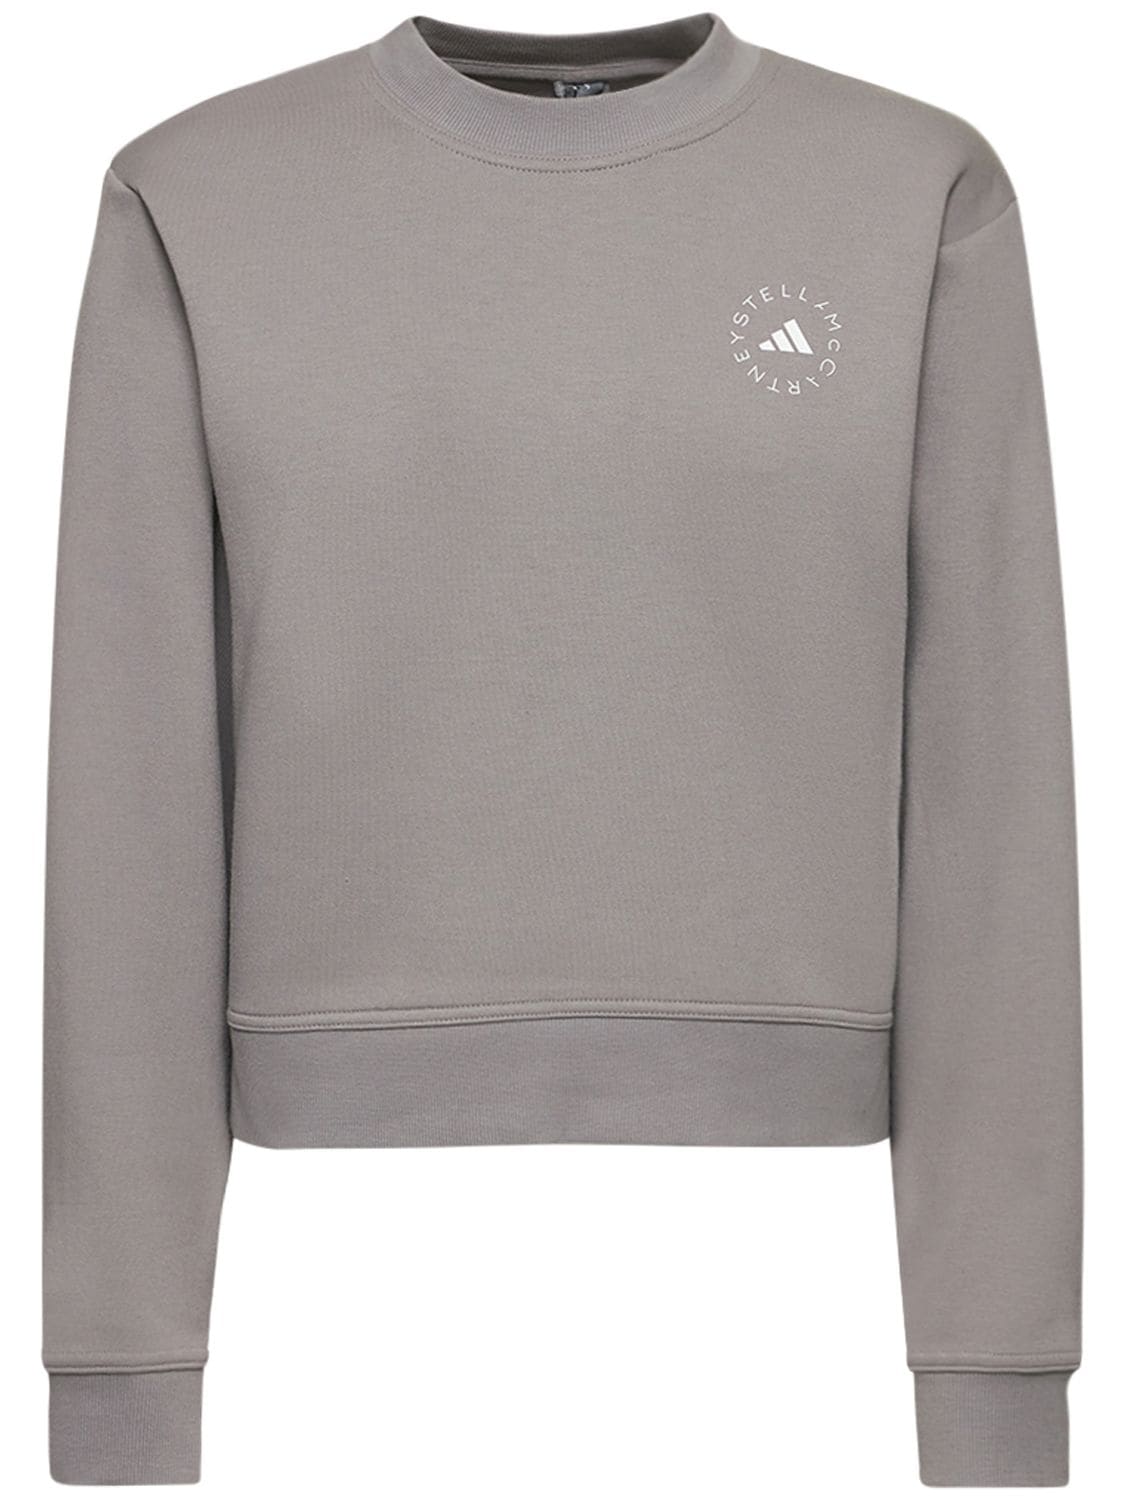 Asmc Sportswear Sweatshirt - ADIDAS BY STELLA MCCARTNEY - Modalova